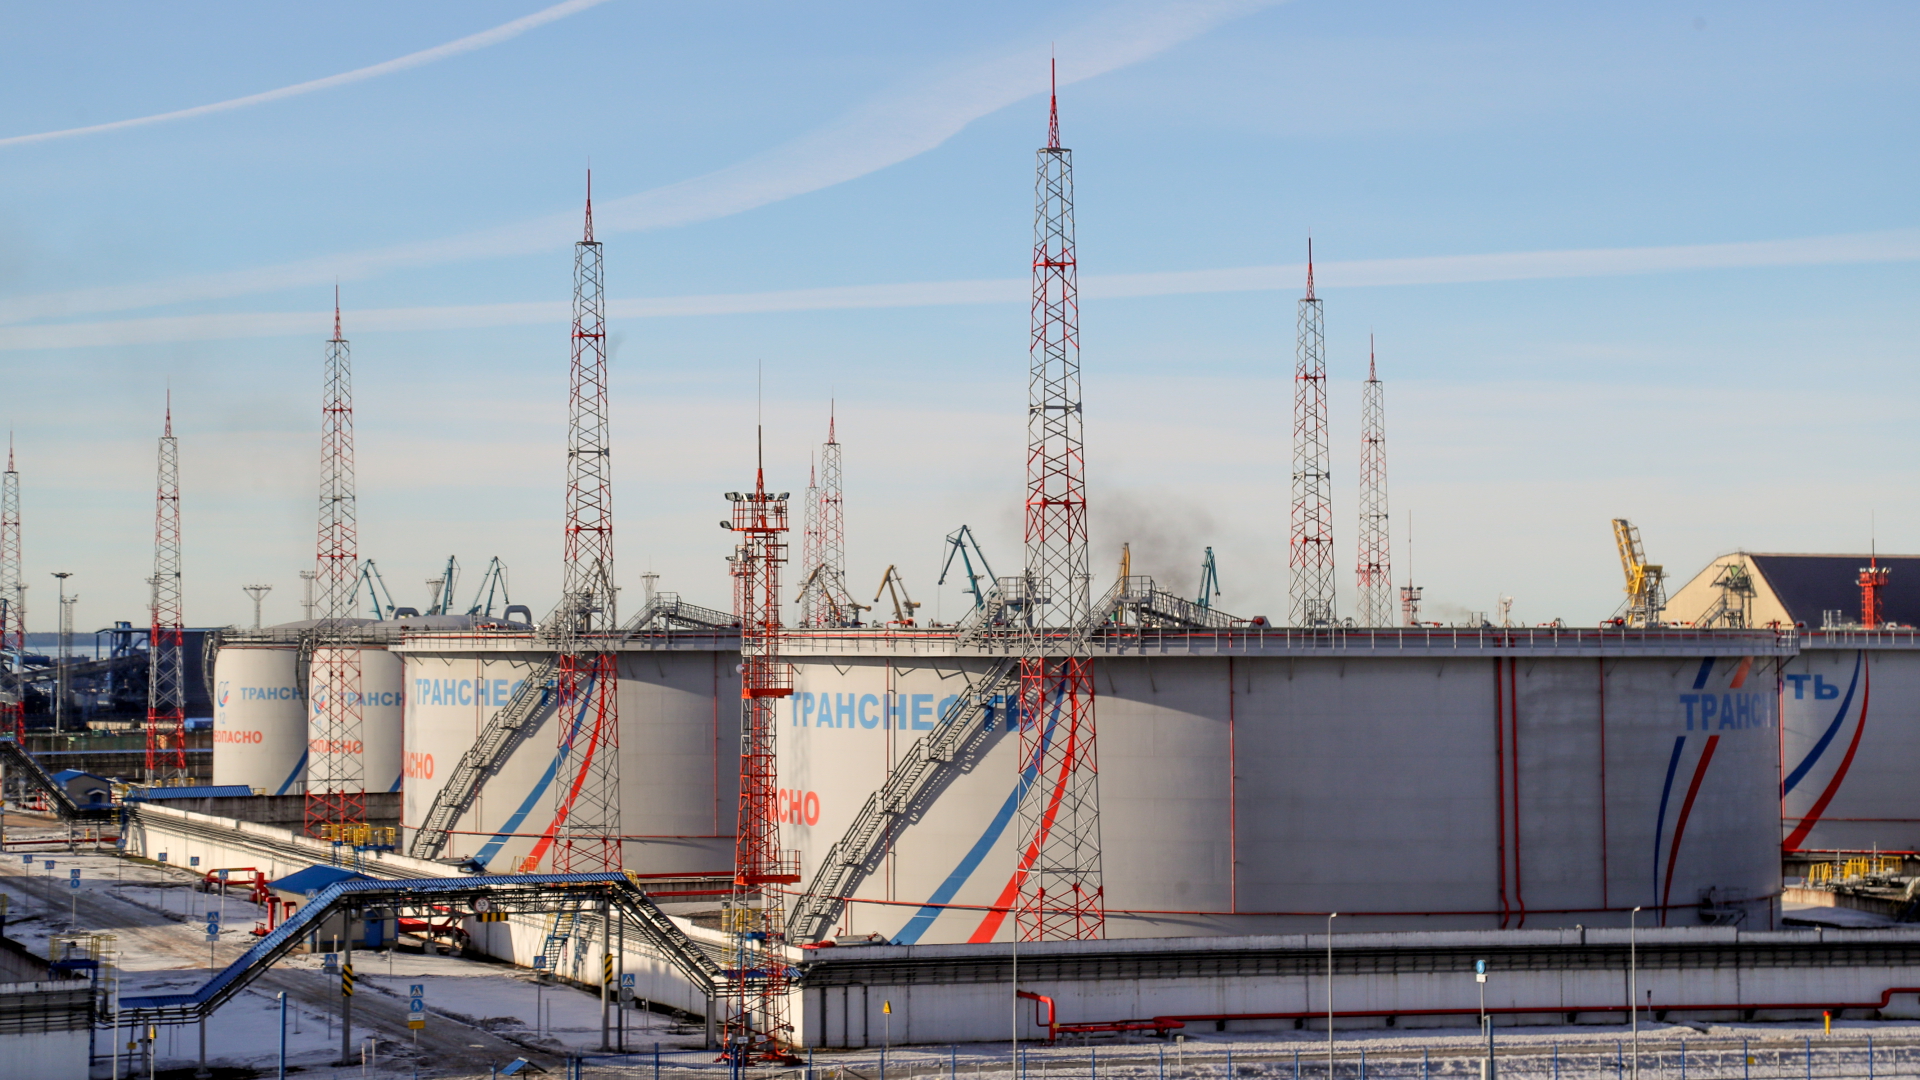 Tanks von Transneft, einem staatlichen russischen Unternehmen, das die Erdöl-Pipelines des Landes betreibt, im Ölterminal von Ust-Luga.